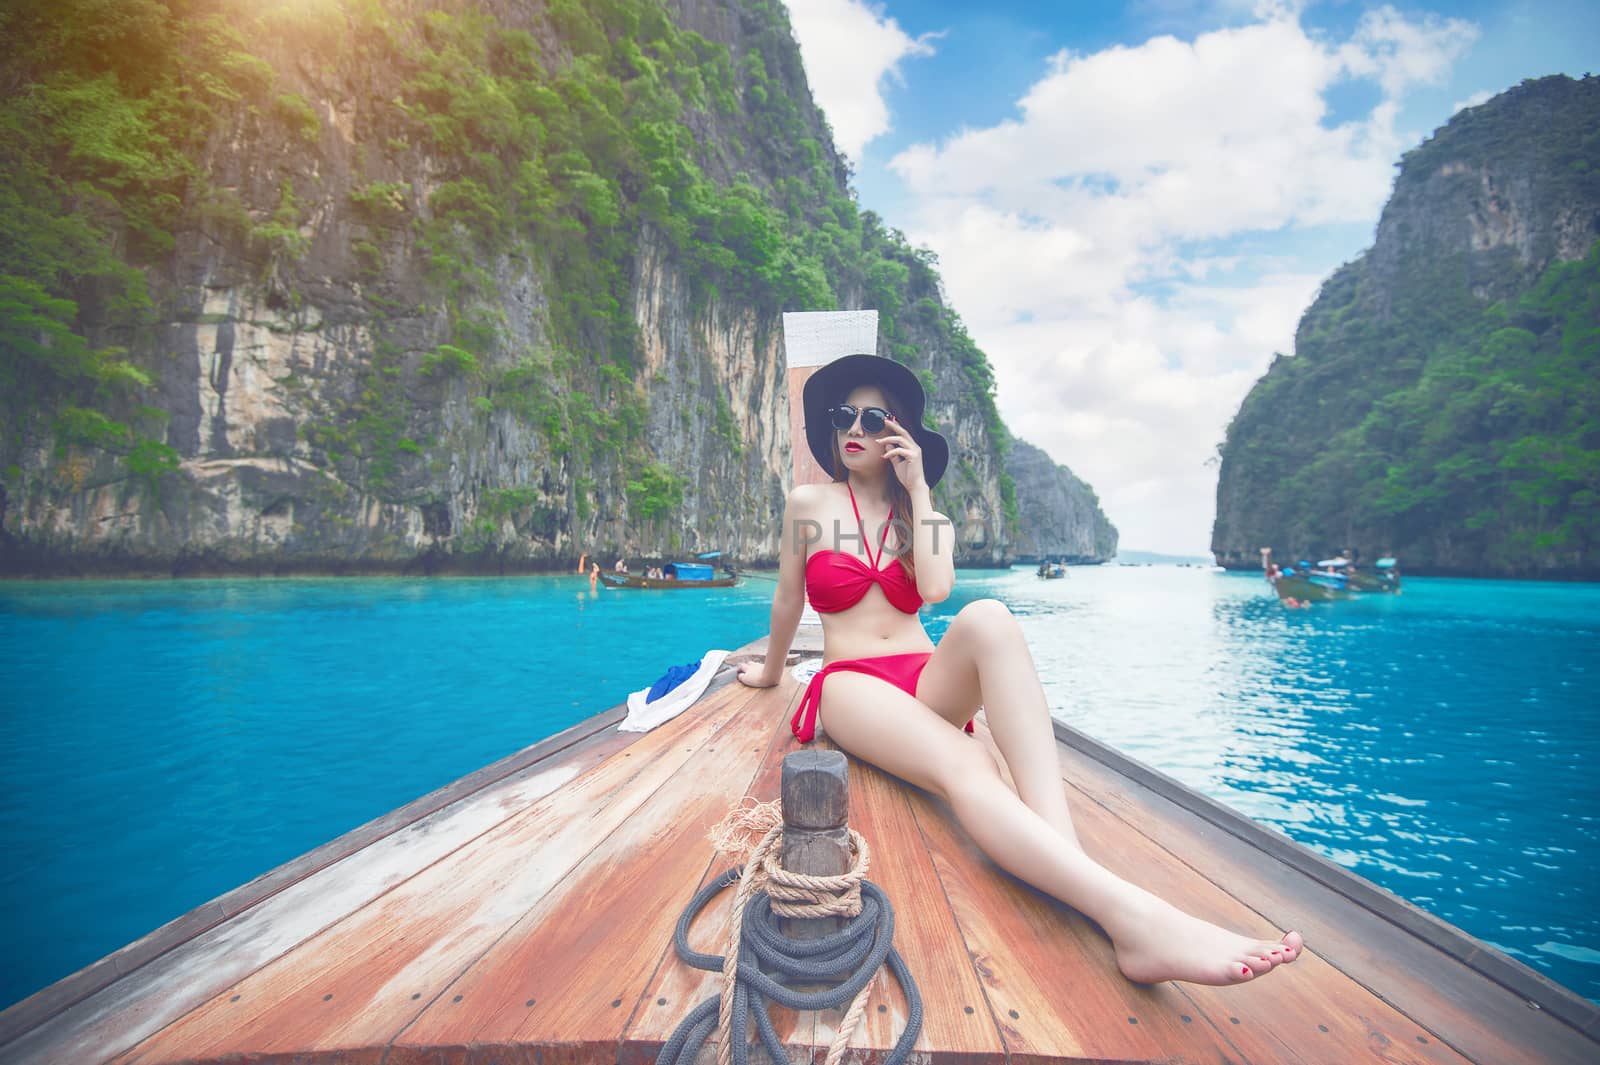 Beautiful girl in red bikini on boat. Vintage tone.